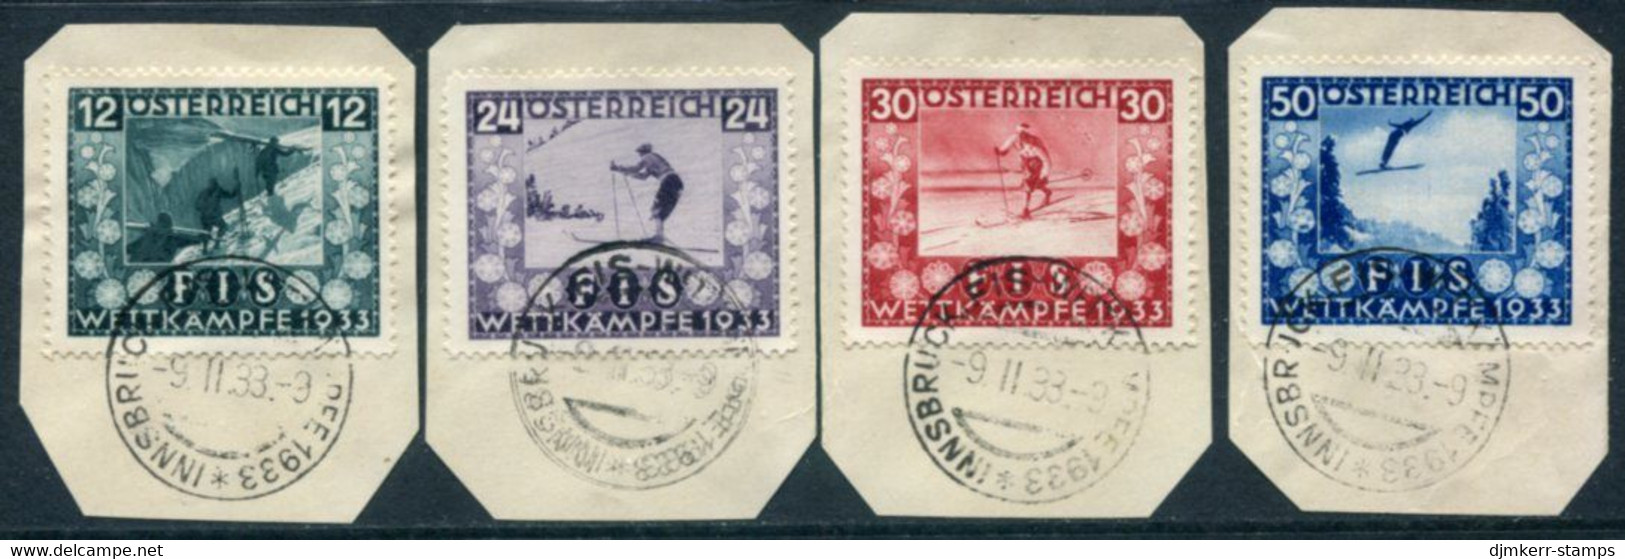 AUSTRIA 1933 Ski Championship Fund Used On Pieces.  Michel 551-54 - Gebruikt